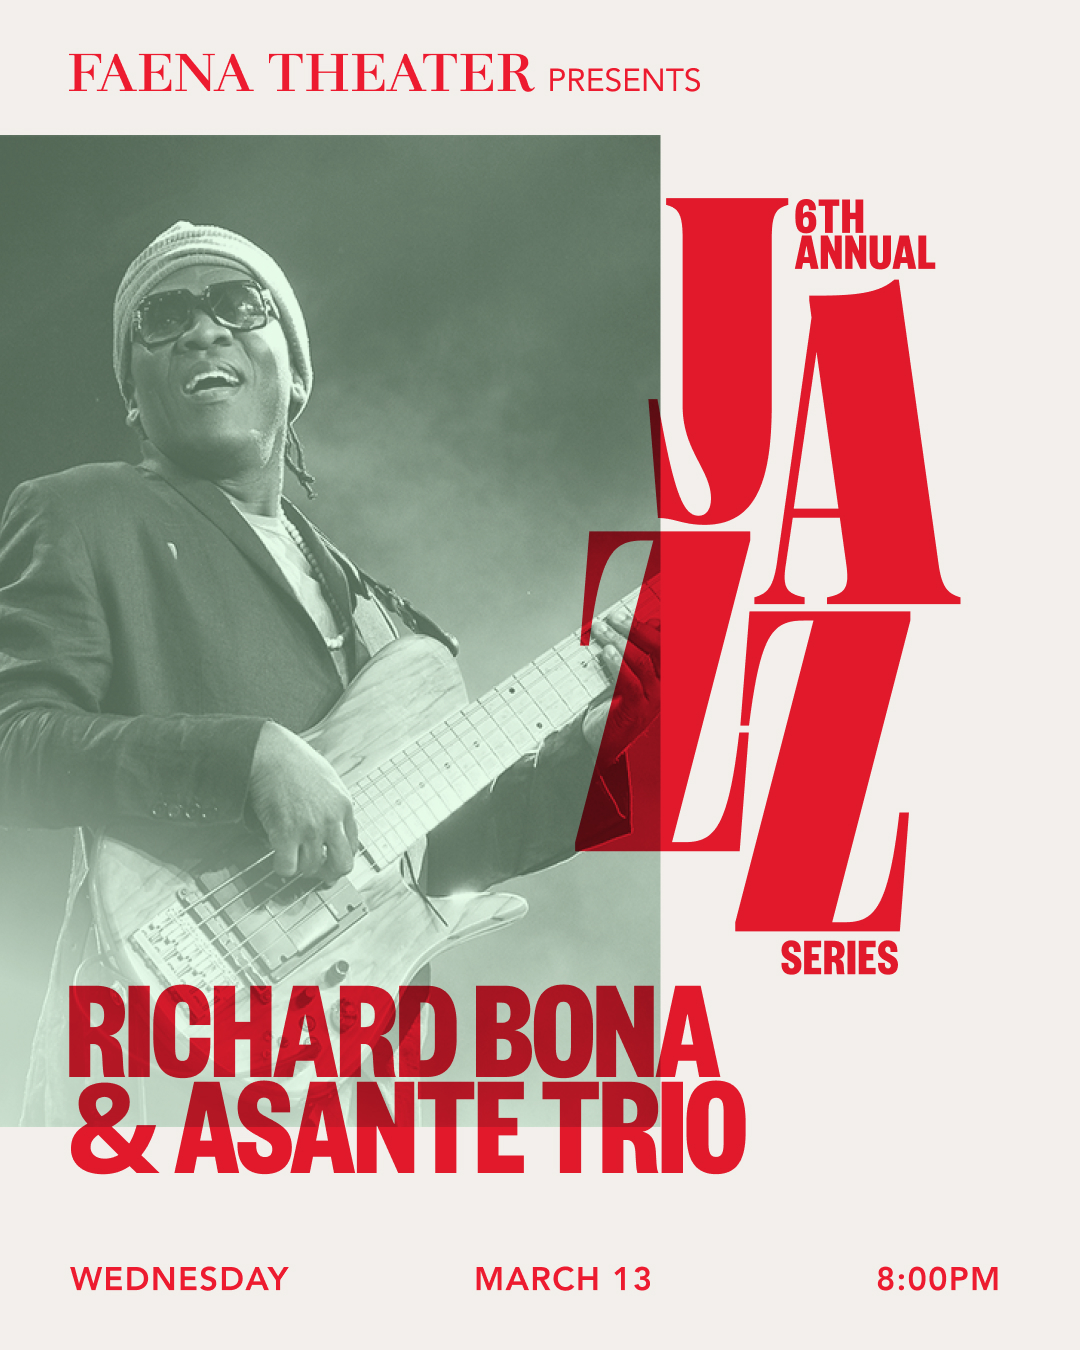 Richard Bona & Asante Trio